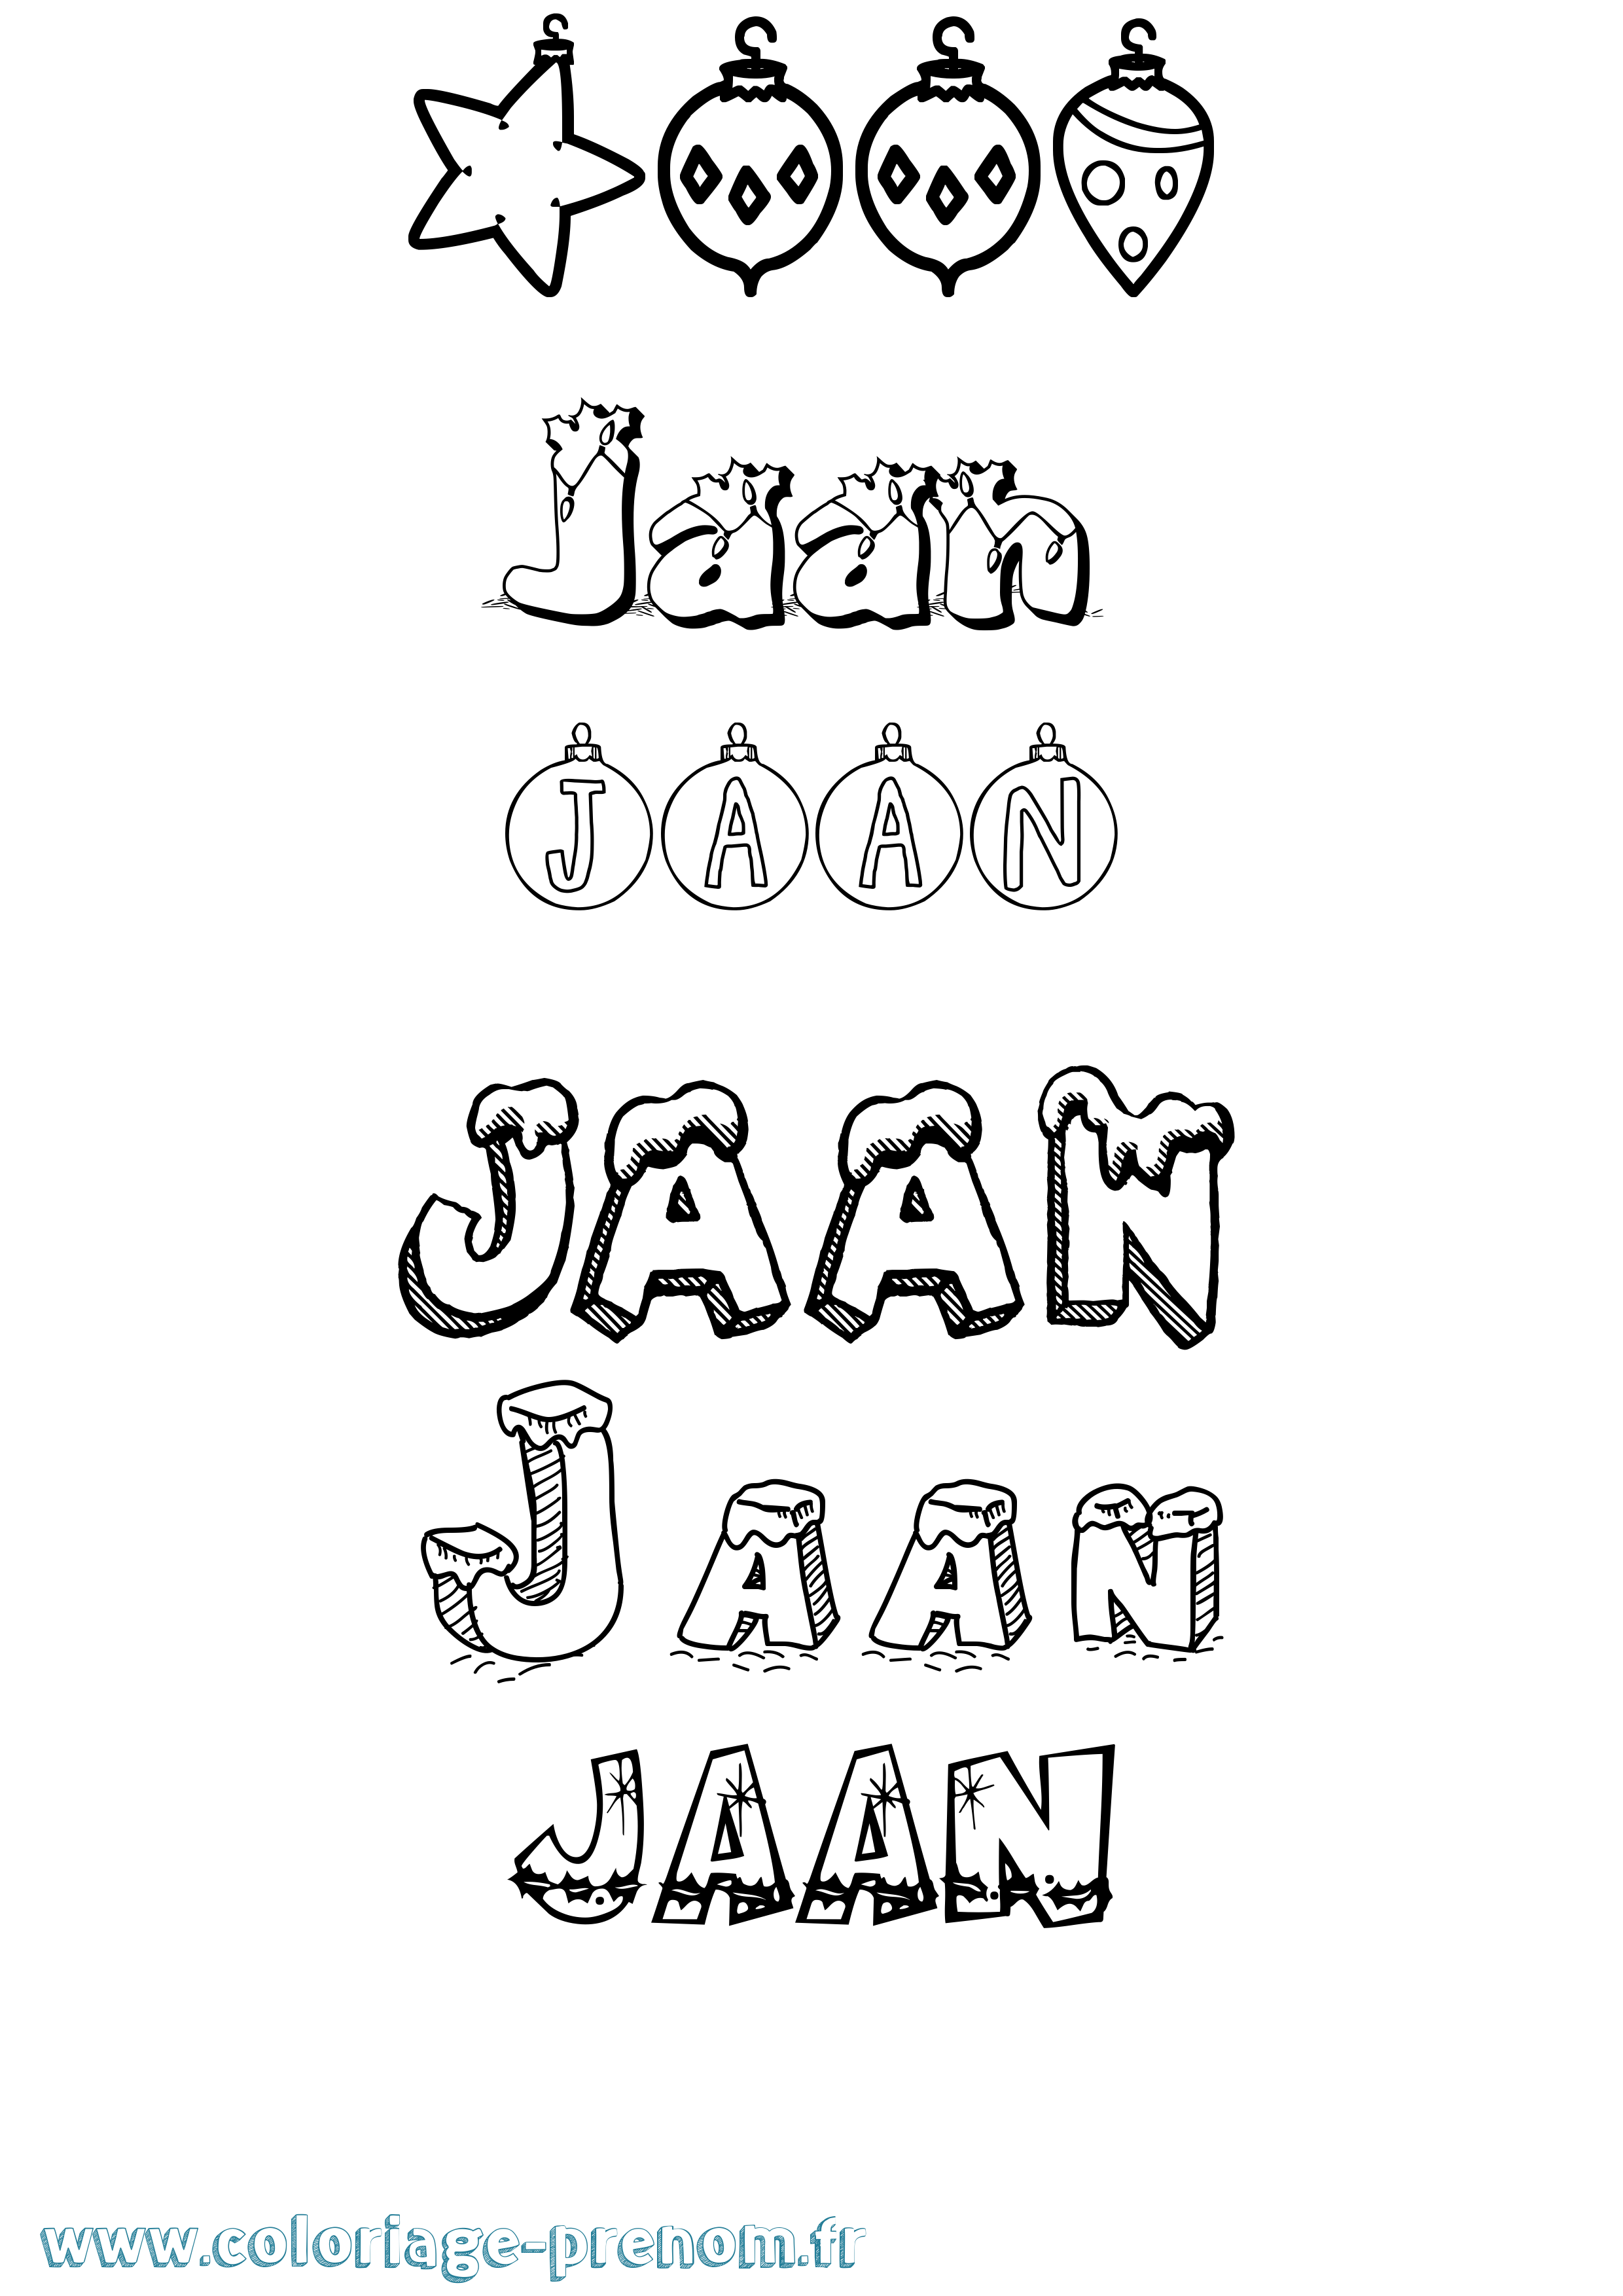 Coloriage prénom Jaan Noël